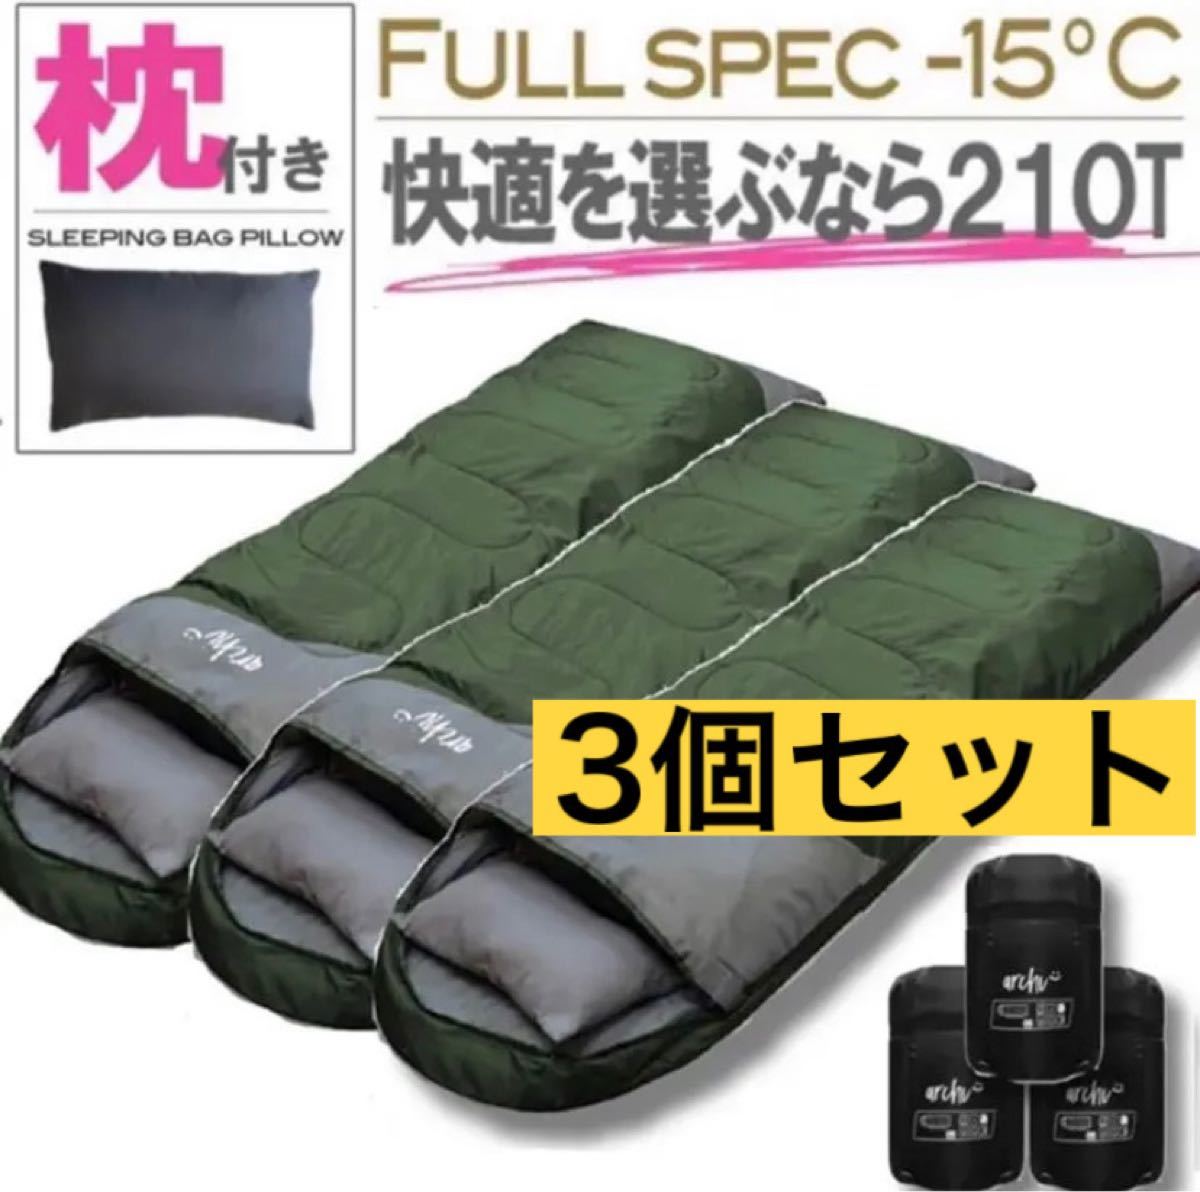 2021高い素材 寝袋 限界温度-15℃ コヨーテ 枕付き 210T キャンプ 防災